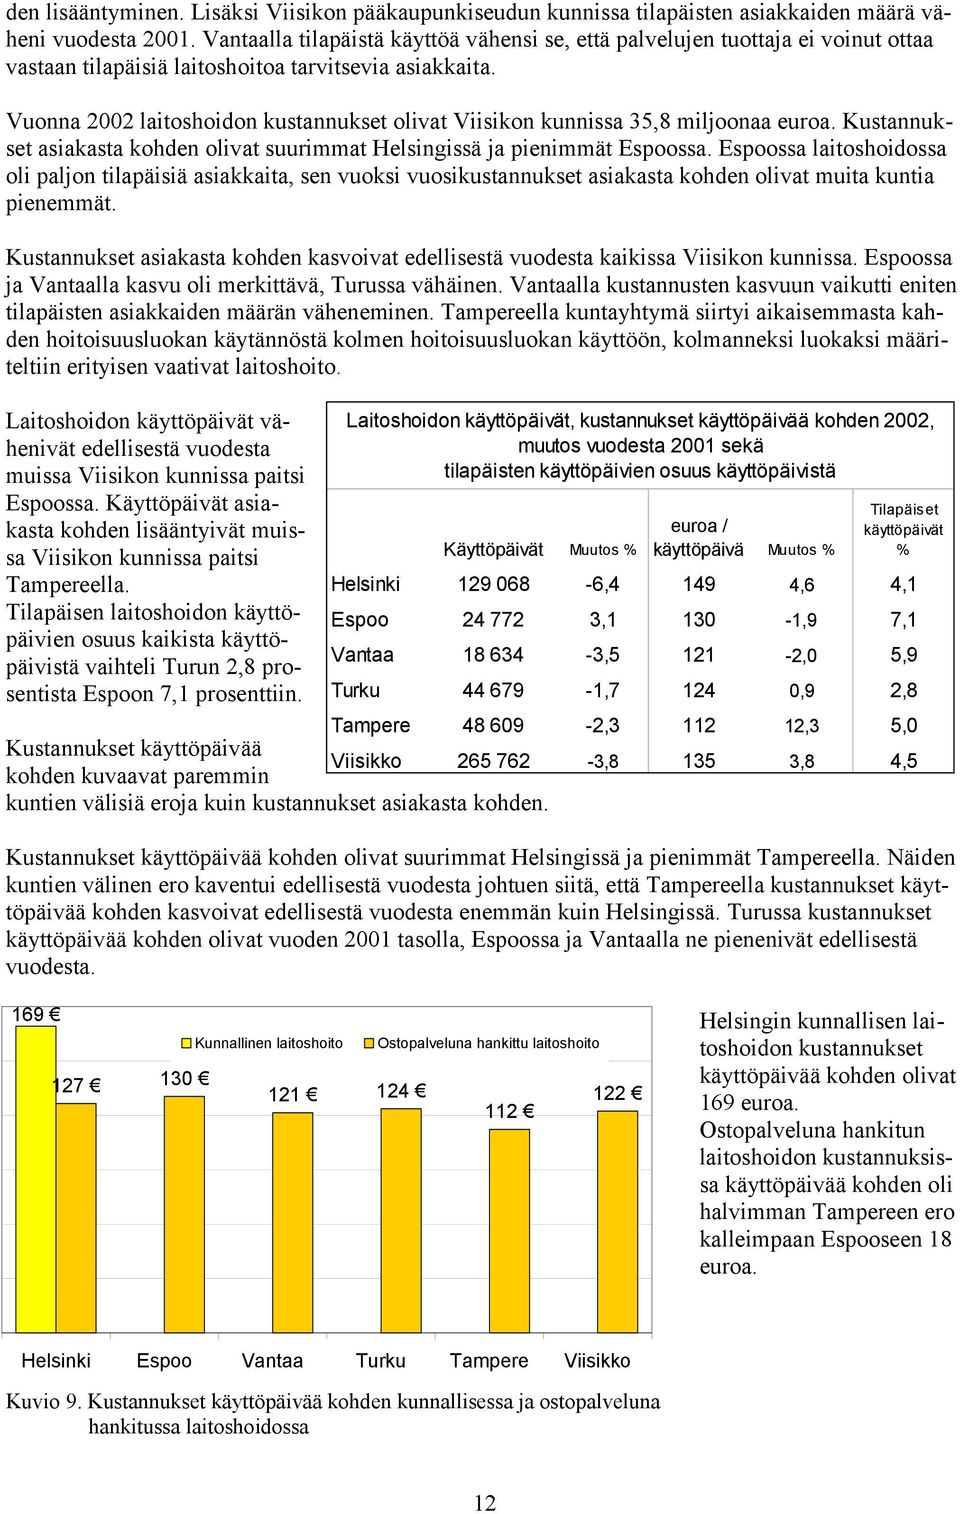 Vuonna 2002 laitoshoidon kustannukset olivat Viisikon kunnissa 35,8 miljoonaa euroa. Kustannukset asiakasta kohden olivat suurimmat Helsingissä ja pienimmät Espoossa.